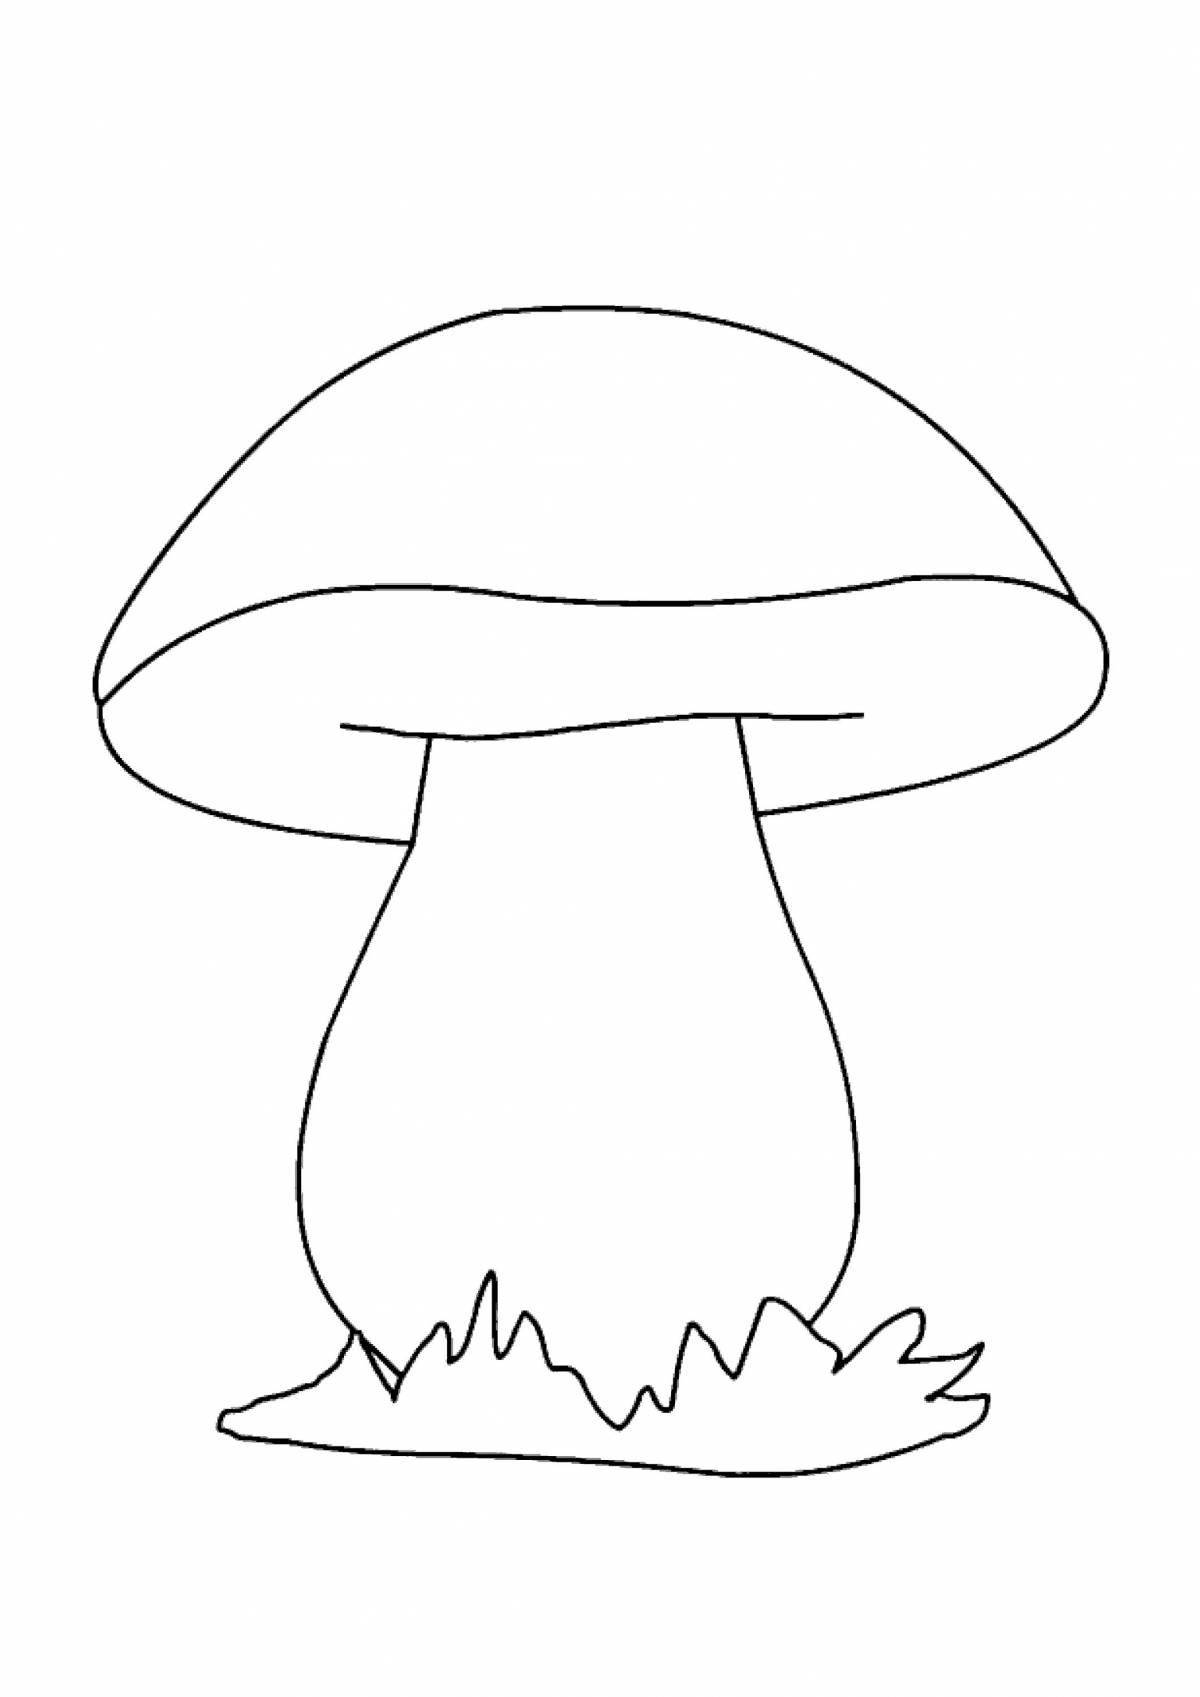 Забавная раскраска с белыми грибами для детей